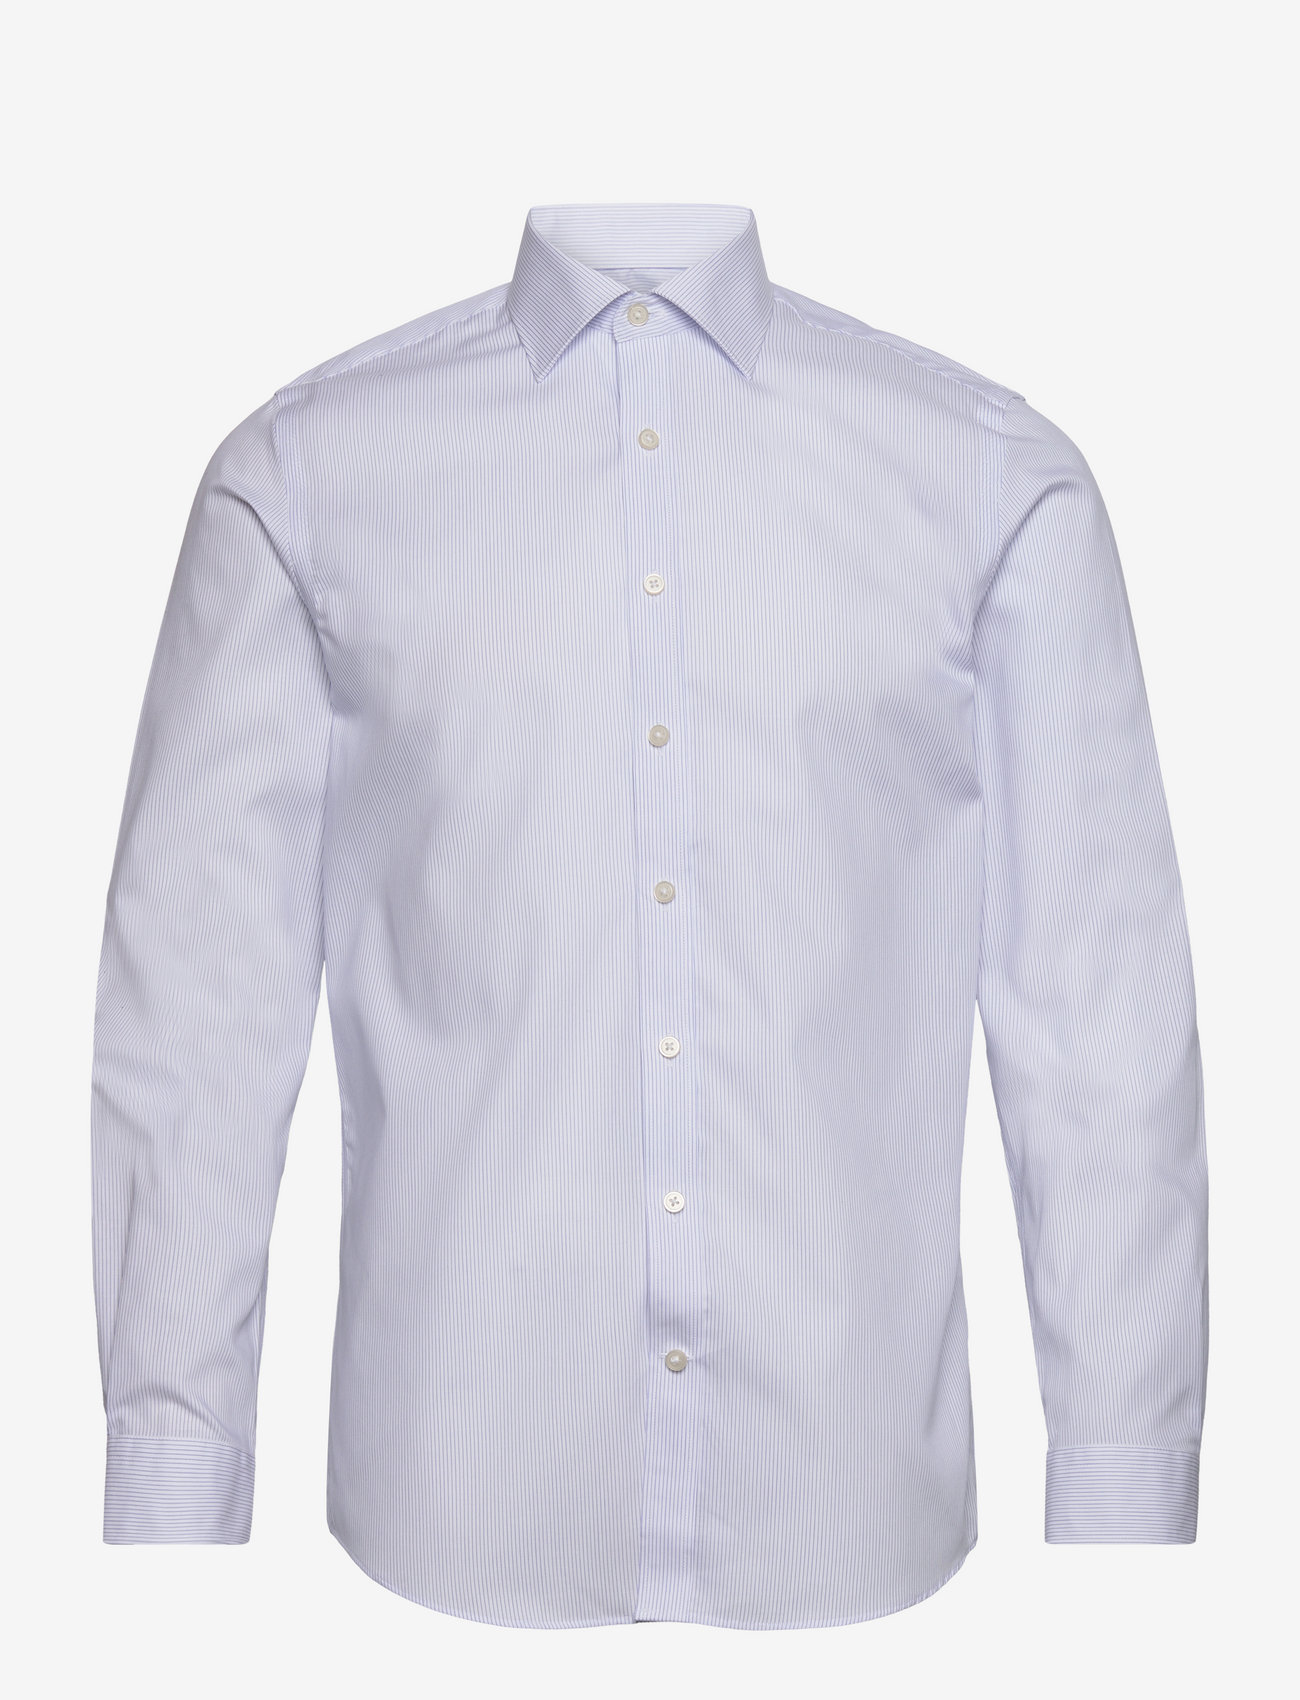 Lindbergh Black - Technical striped shirt L/S - penskjorter - white - 0